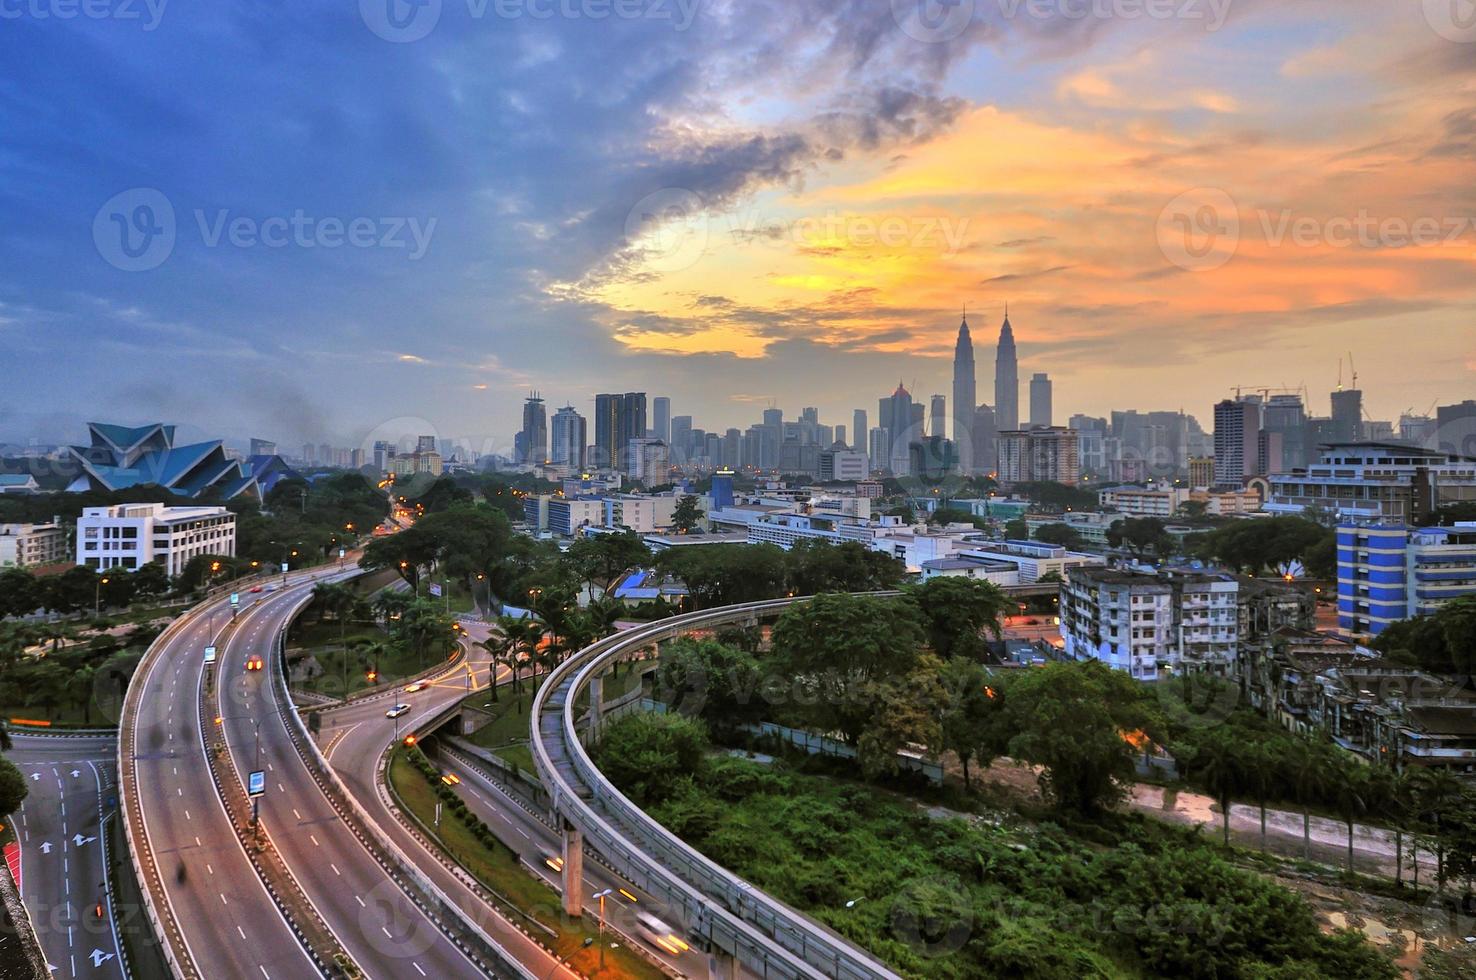 enigszins onscherp beeld van de skyline van Kuala Lumpur foto